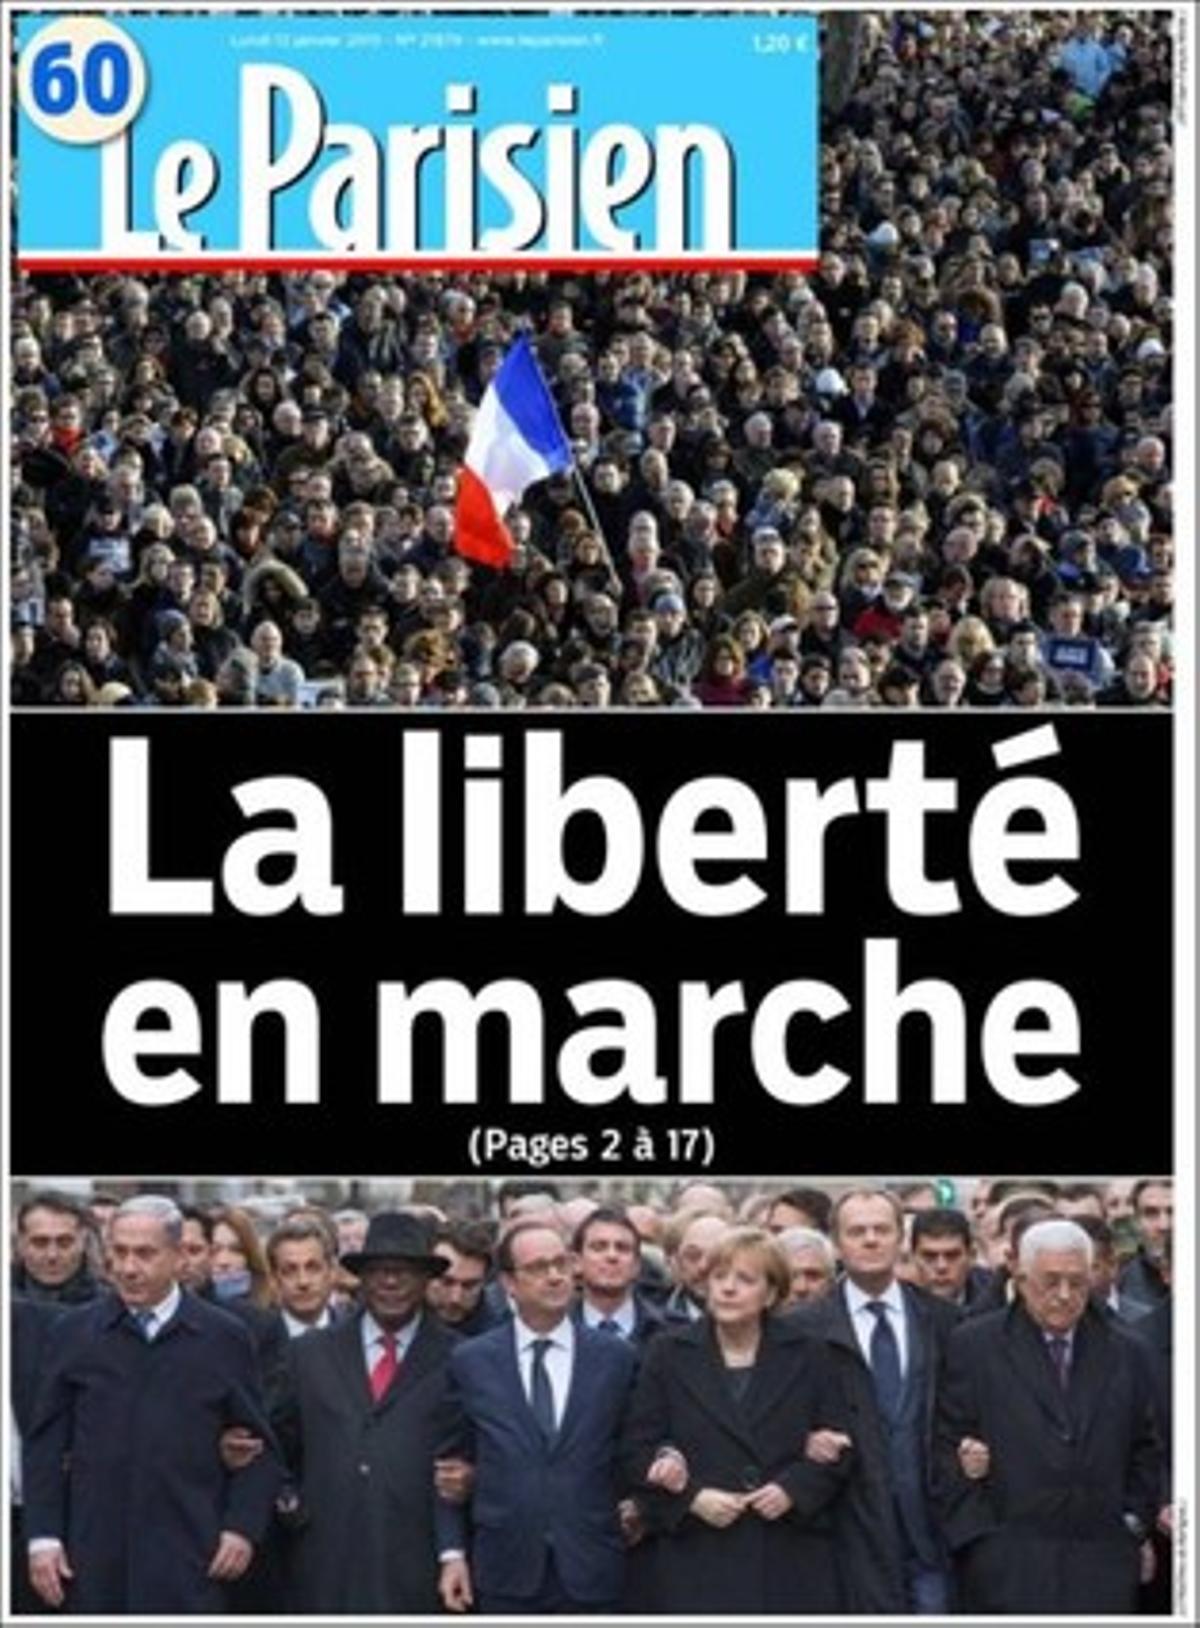 La portada de ’Le Parisien’.